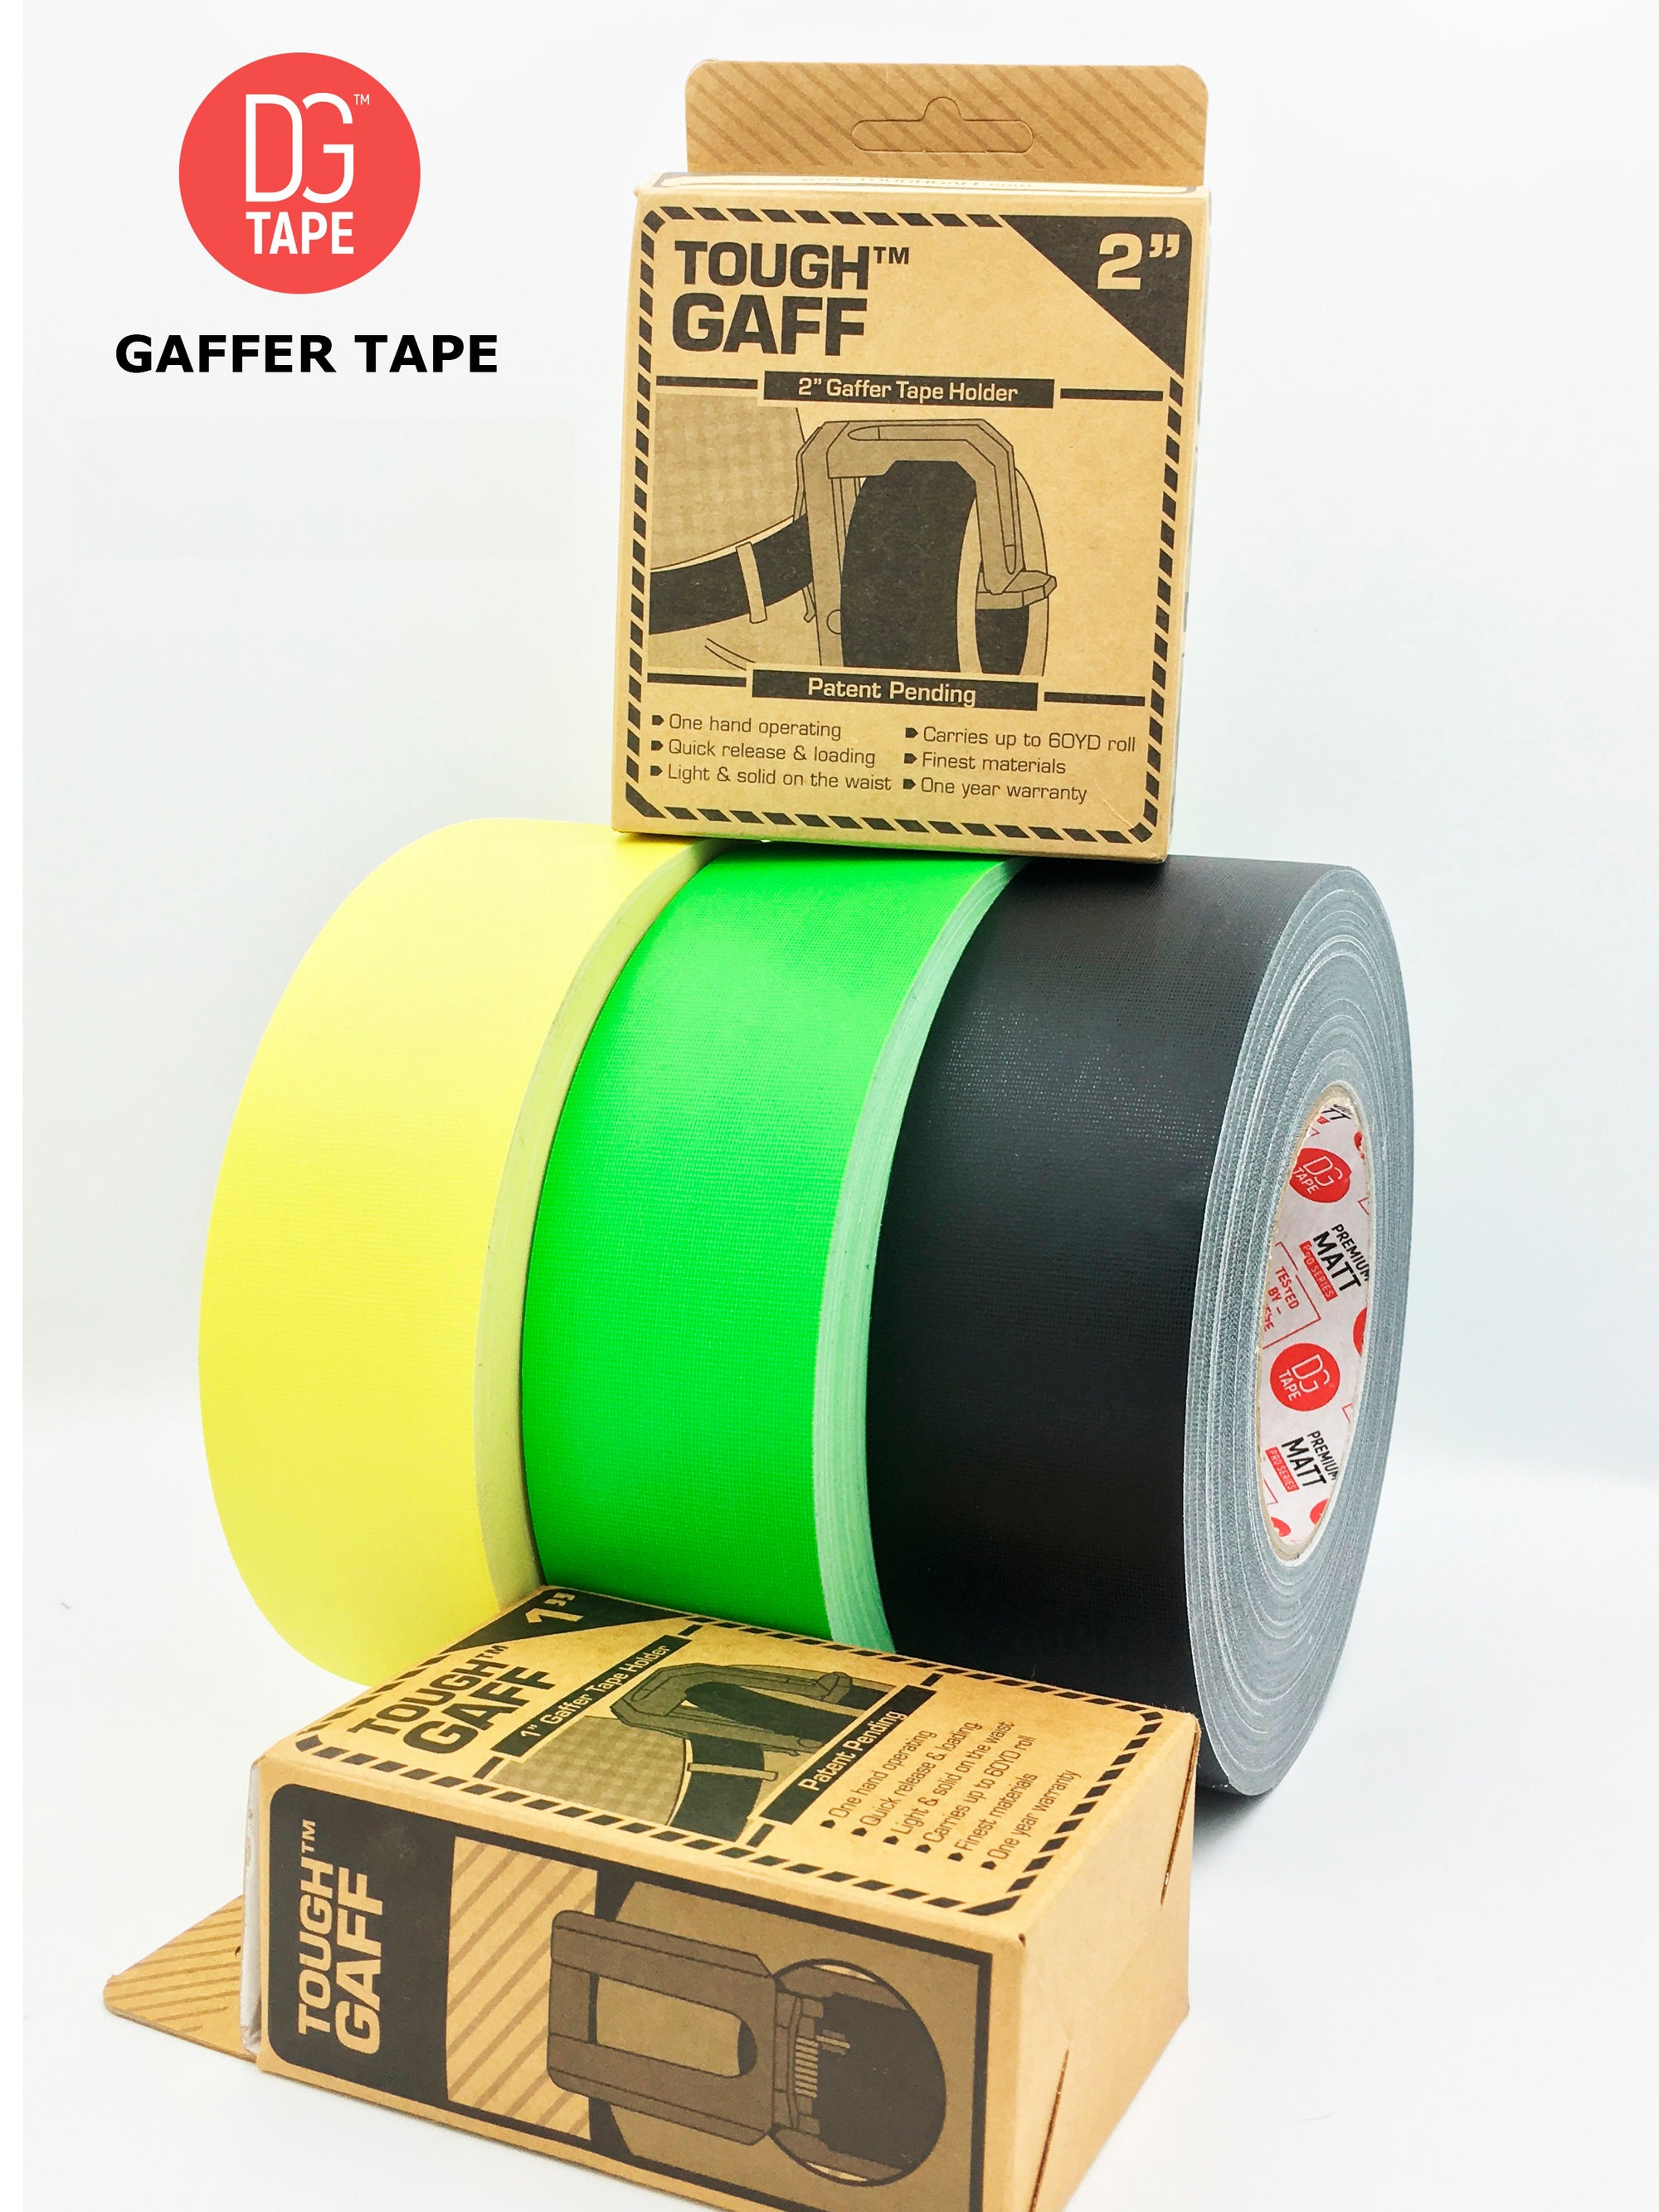 1 inch Holder ToughGAFF - gaff tape holder for 30 or 60 Yards